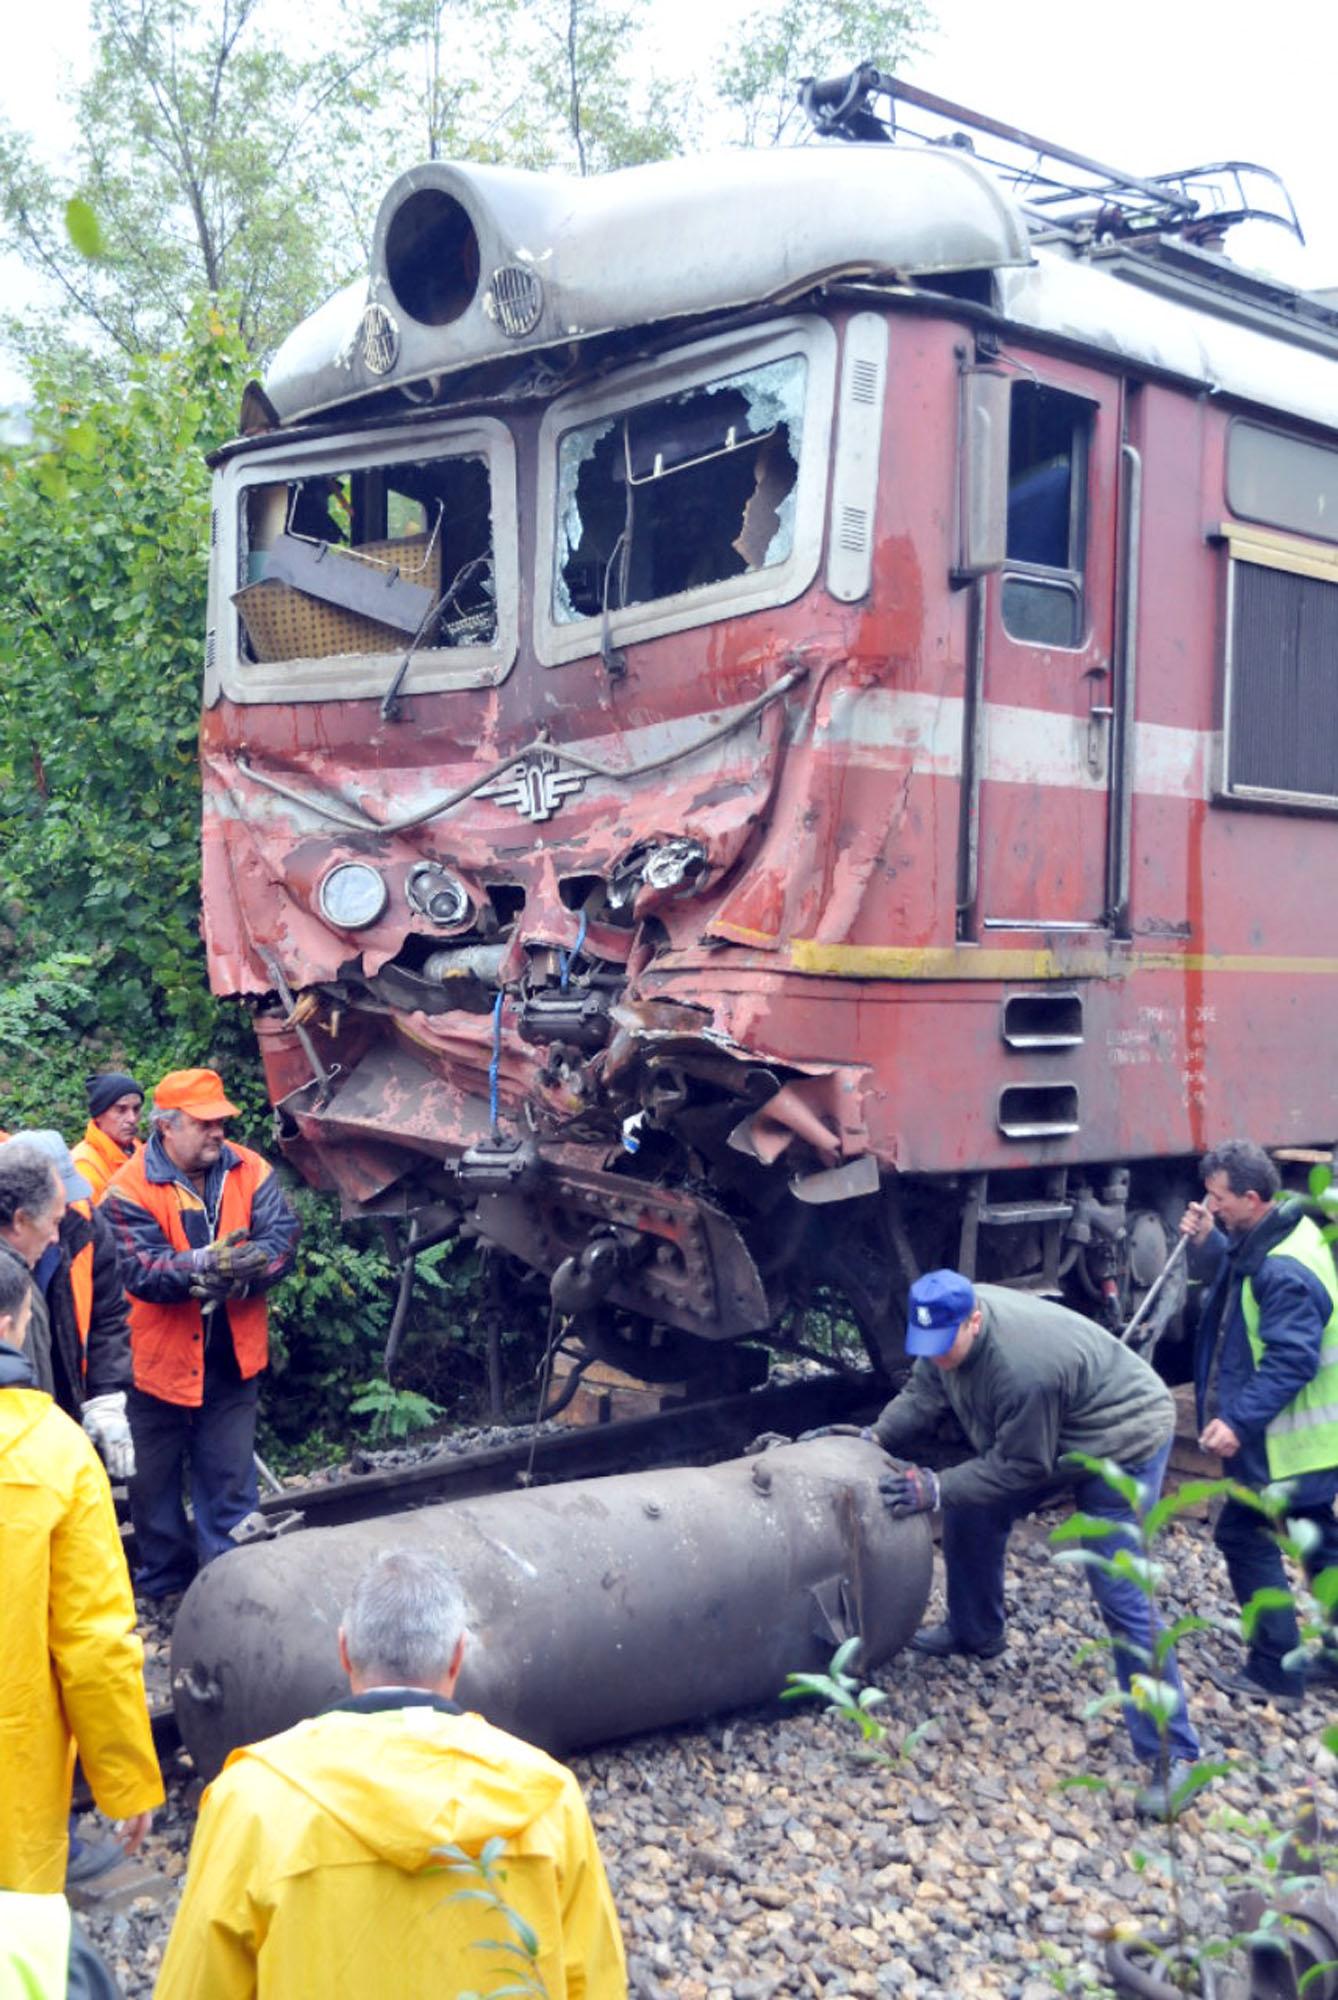 Ръководители движение виновни за влаковата катастрофа

